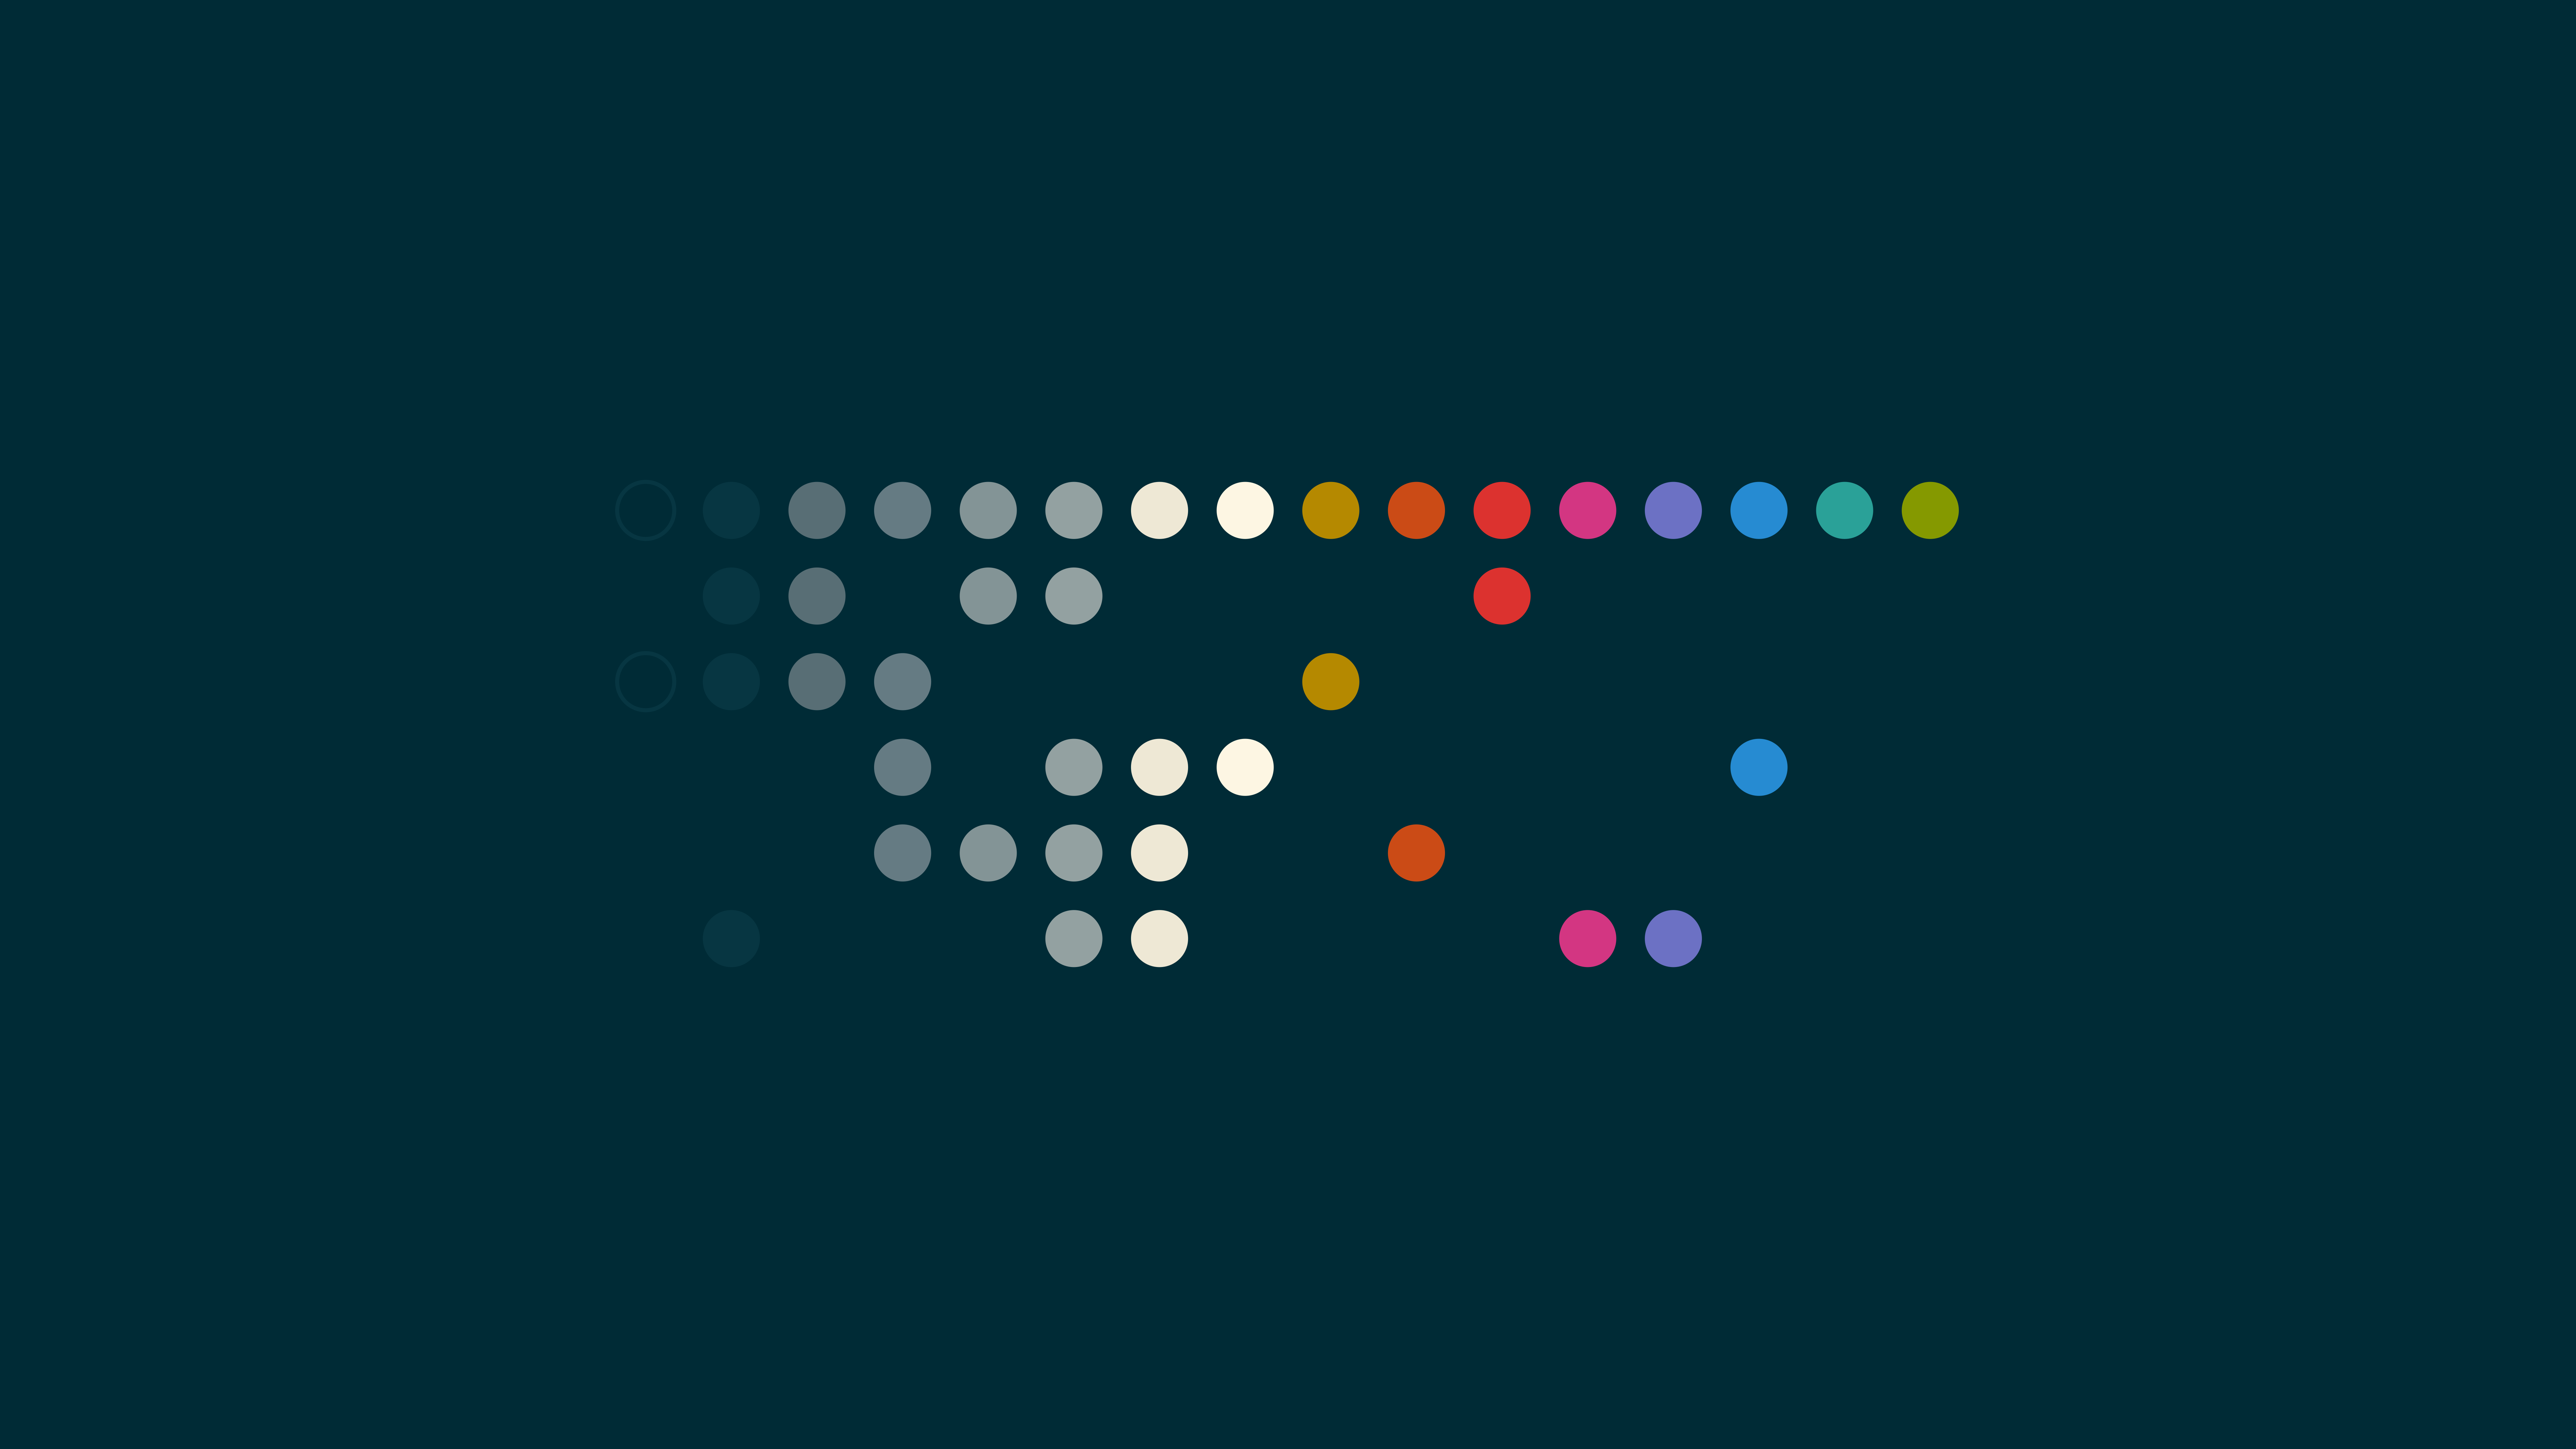 Minimalism Simple Background Solarized Colorscheme Circle Dots Colorful Spectrum Blue Background 7680x4320